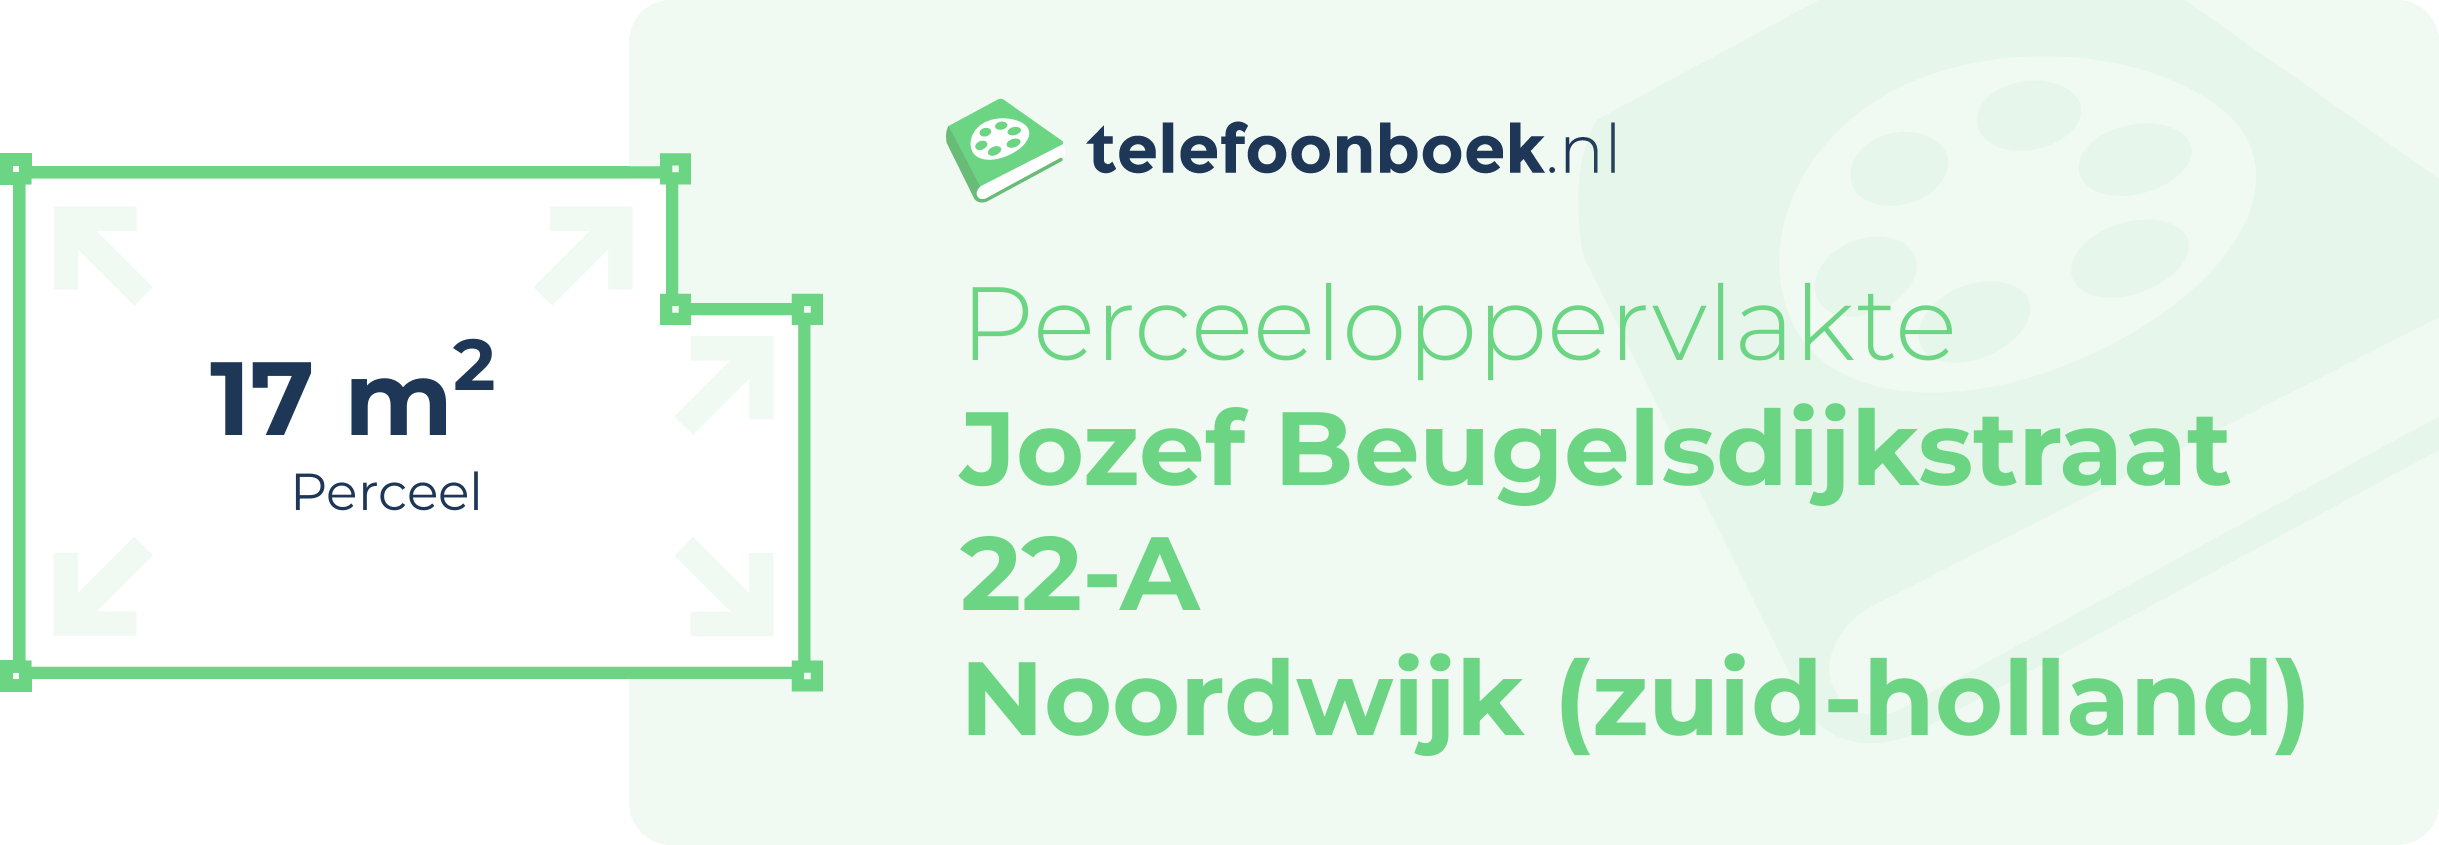 Perceeloppervlakte Jozef Beugelsdijkstraat 22-A Noordwijk (Zuid-Holland)